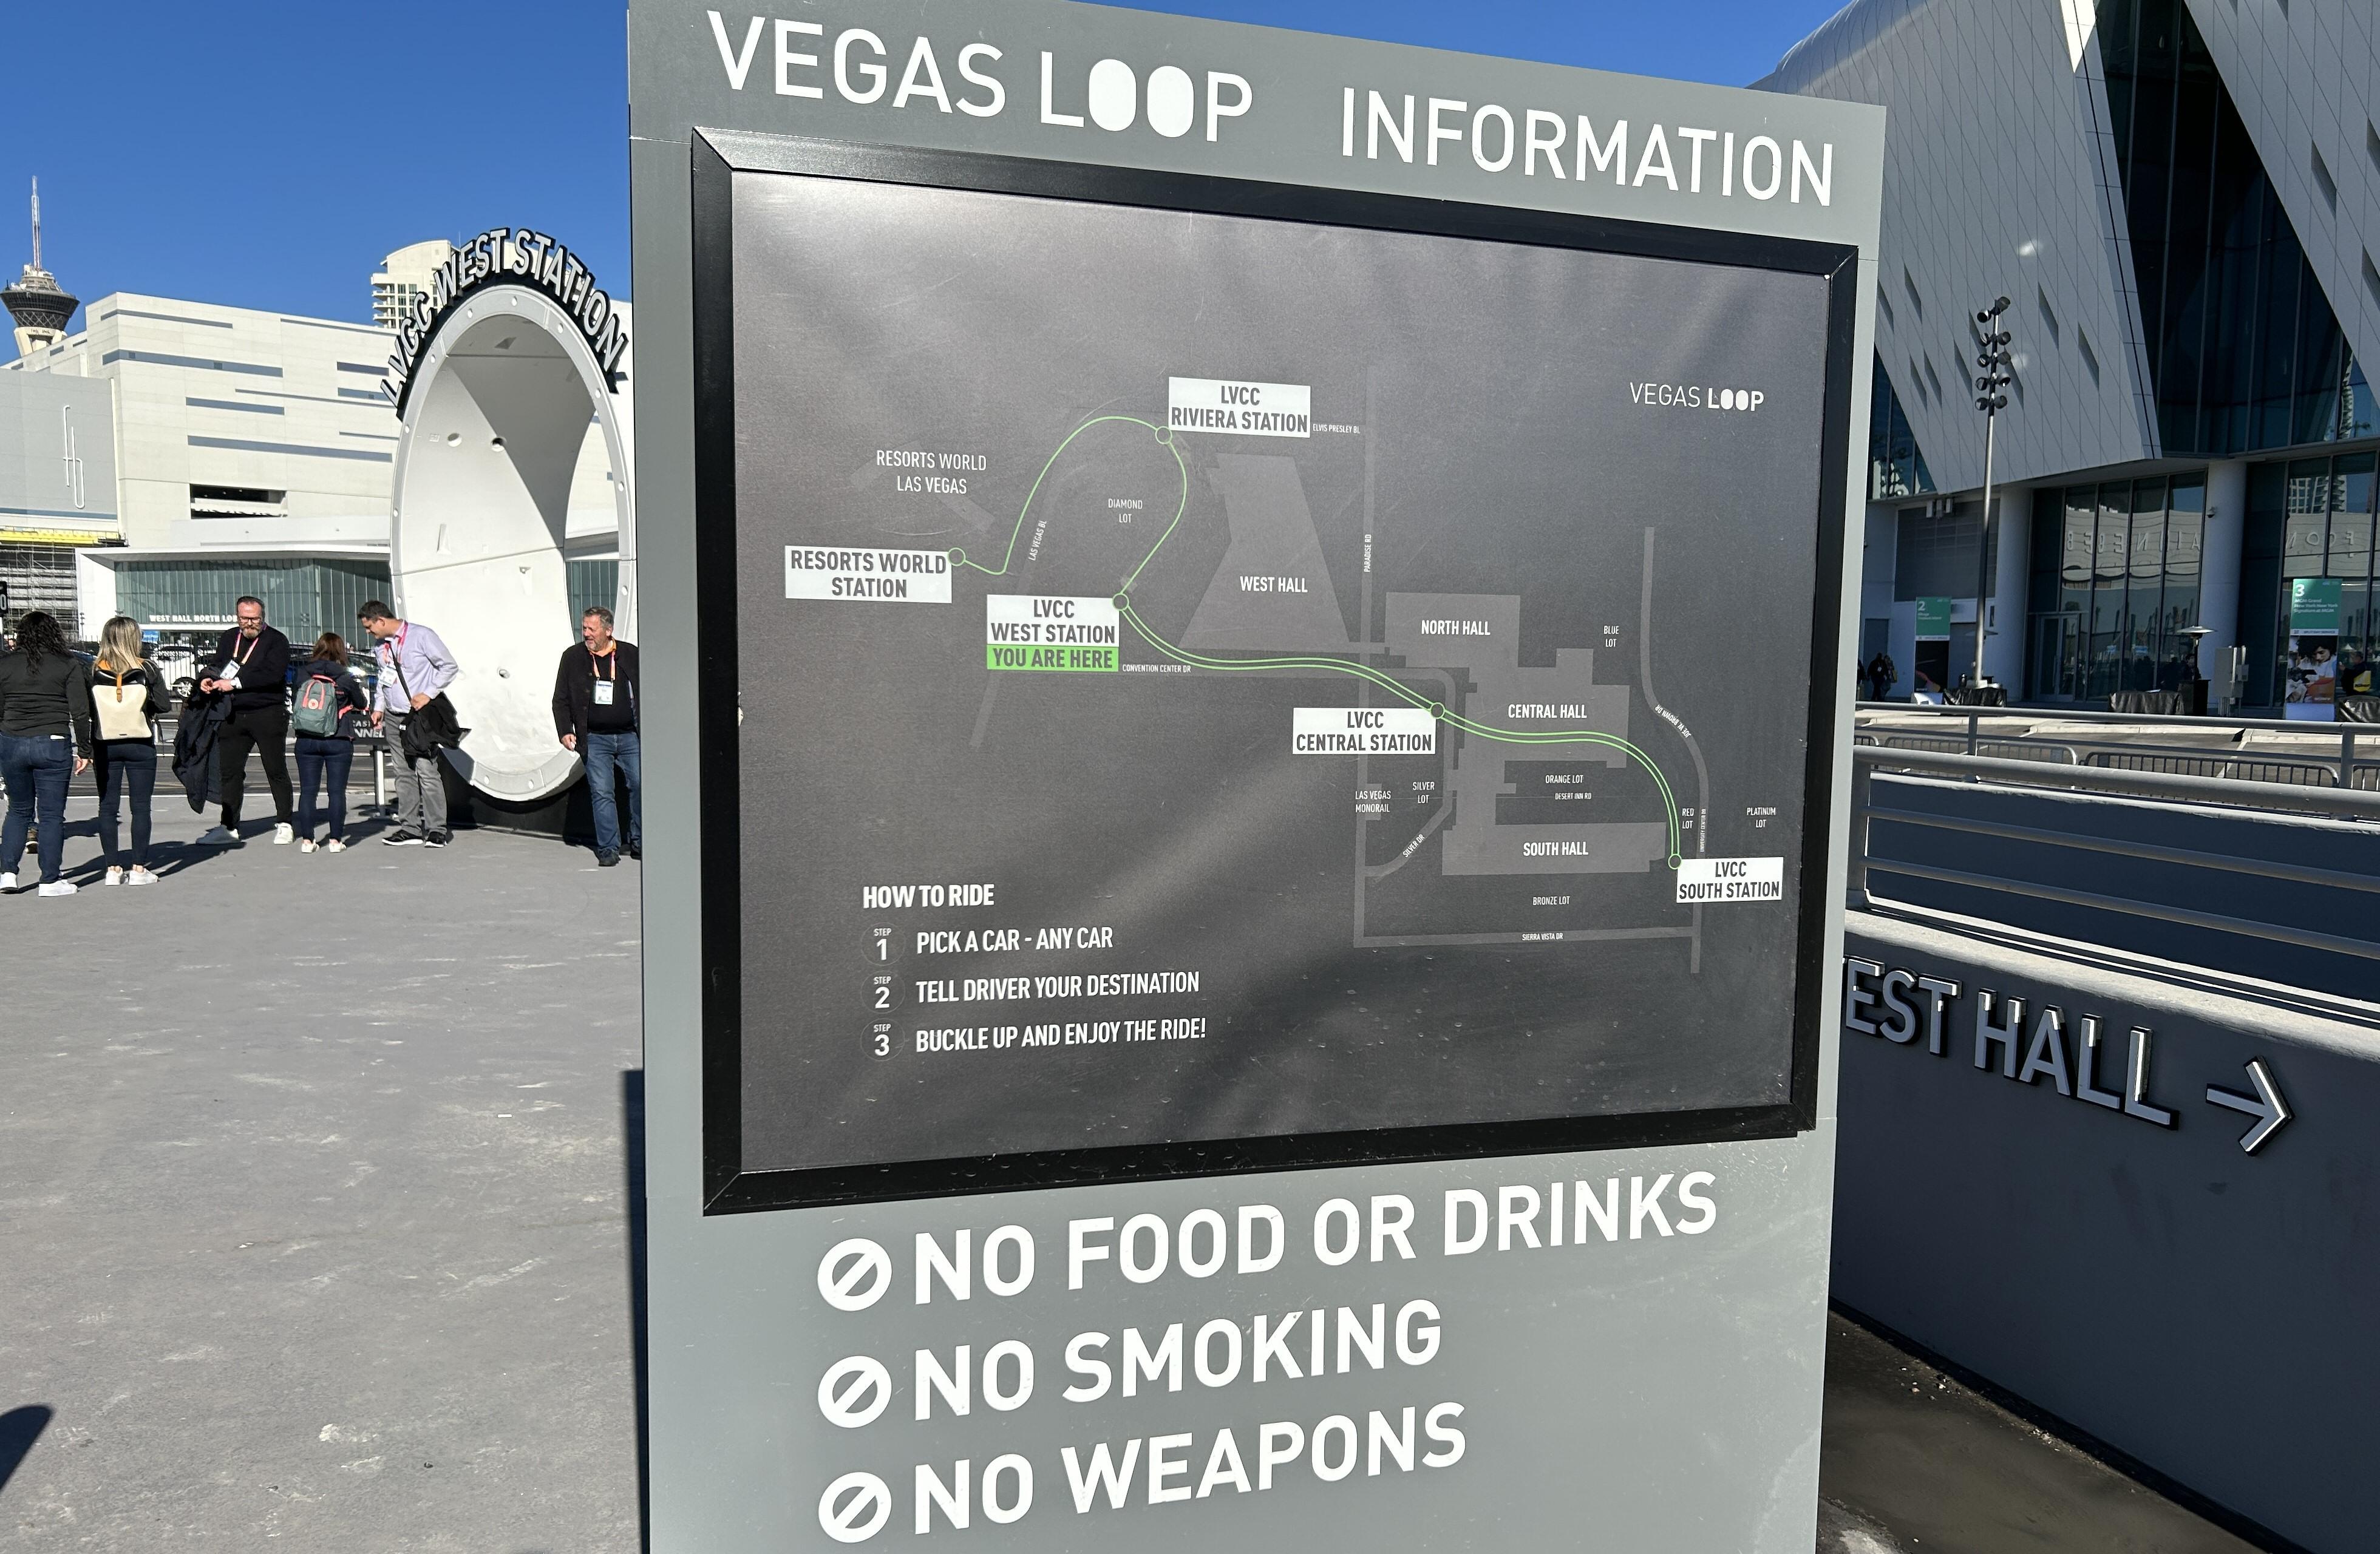 Kart over Vegas Loop per i dag. Og ganske klare regler.